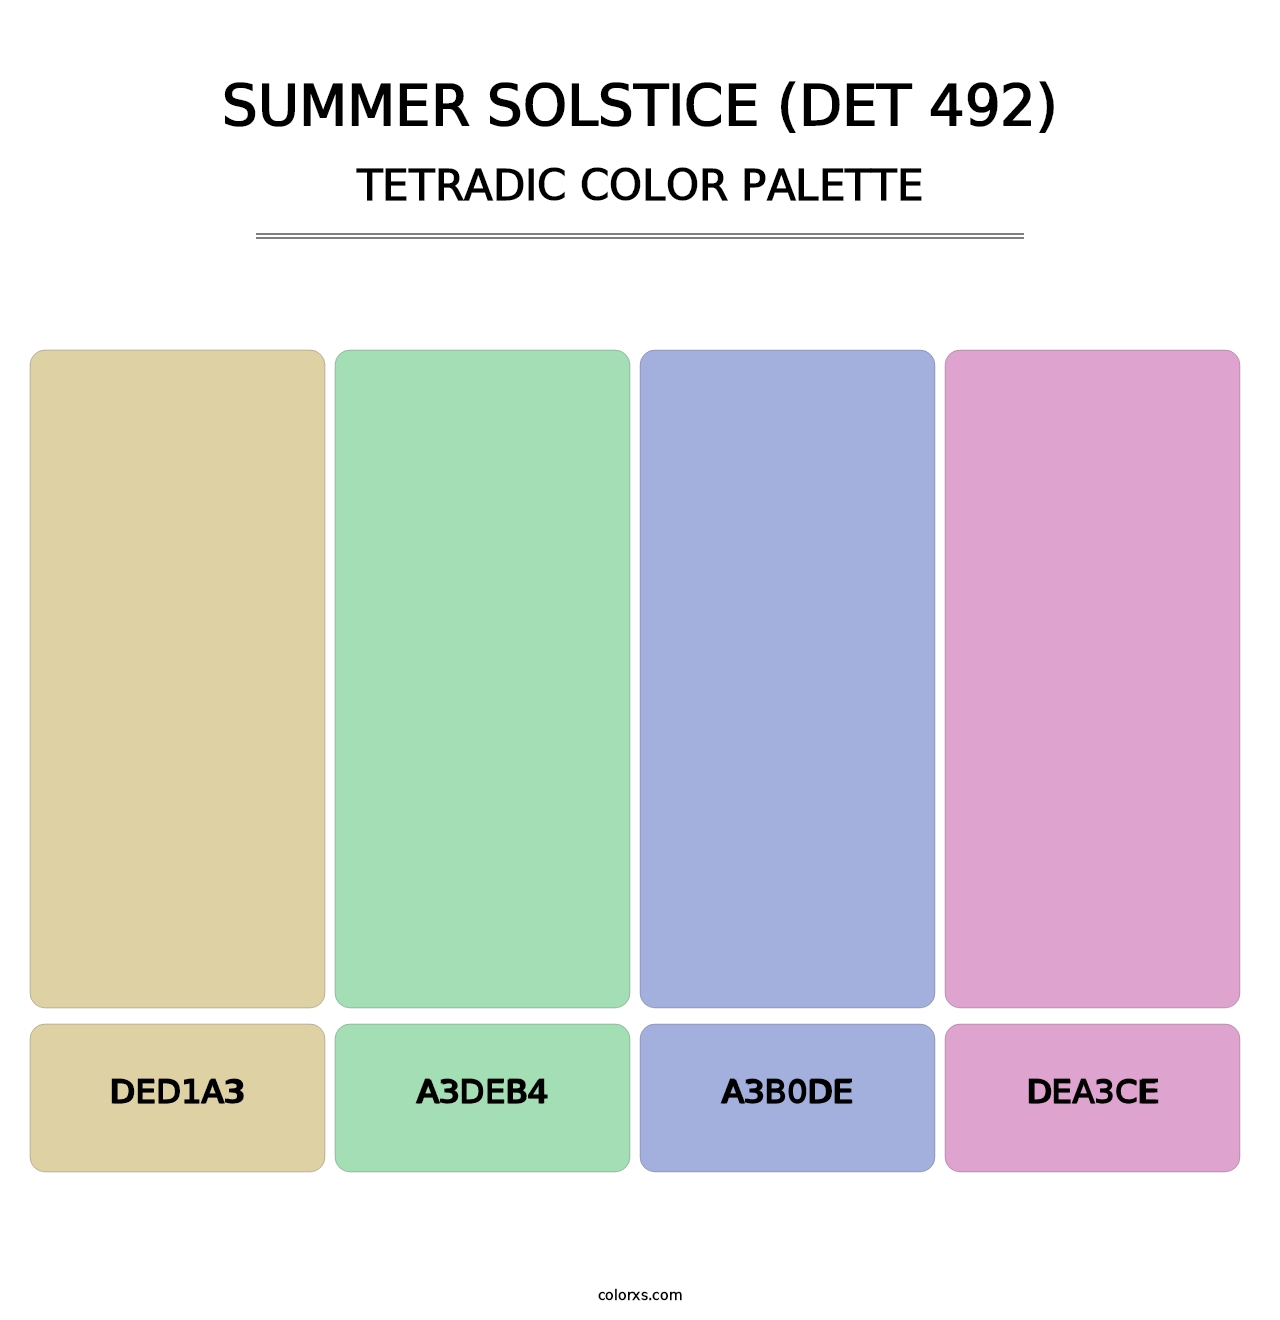 Summer Solstice (DET 492) - Tetradic Color Palette